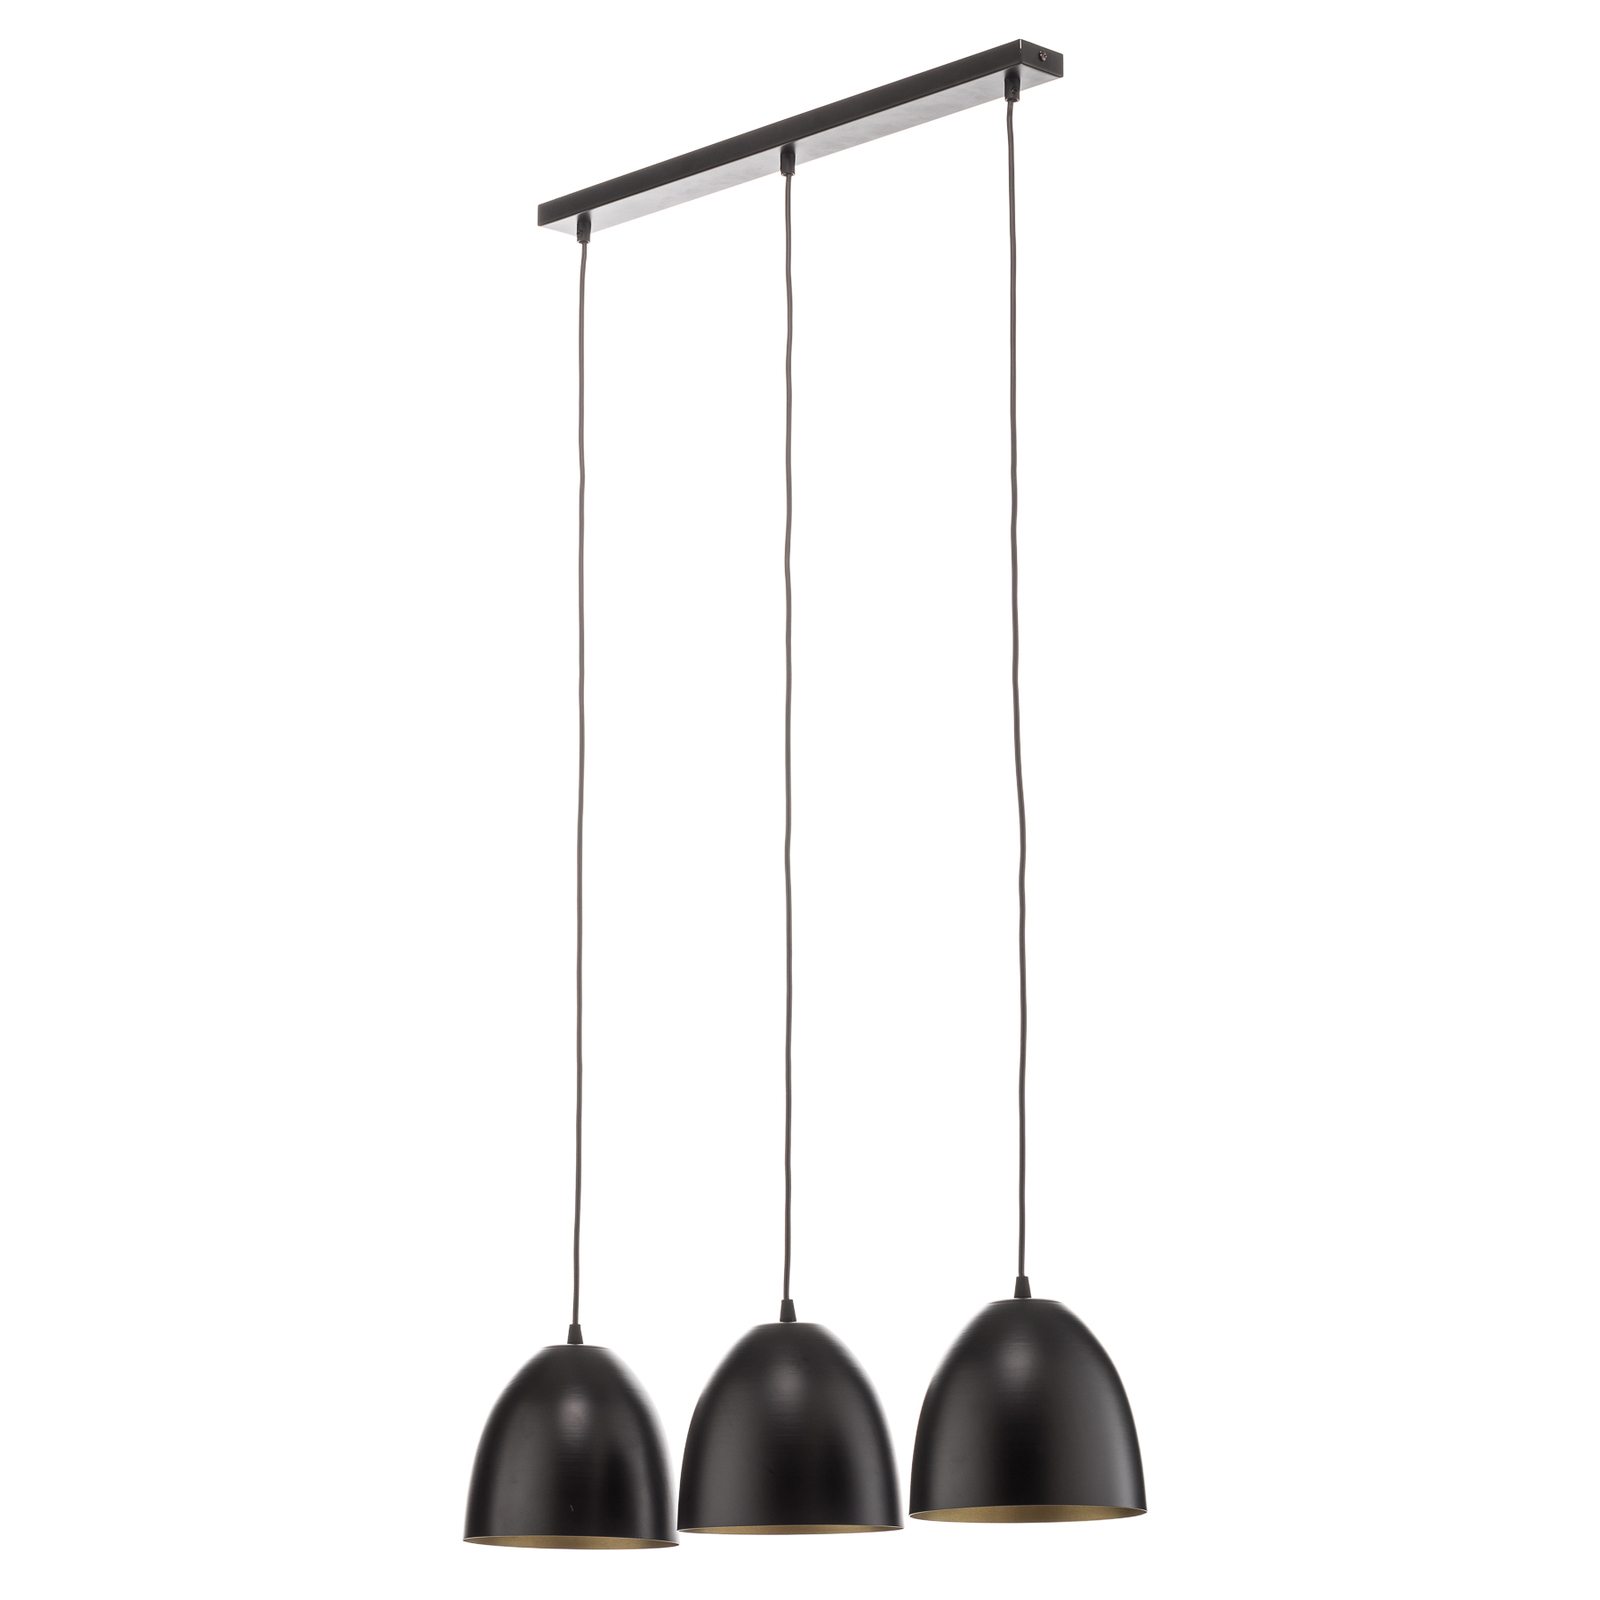 Hanglamp Lenox, 3-lamps, zwart/goud